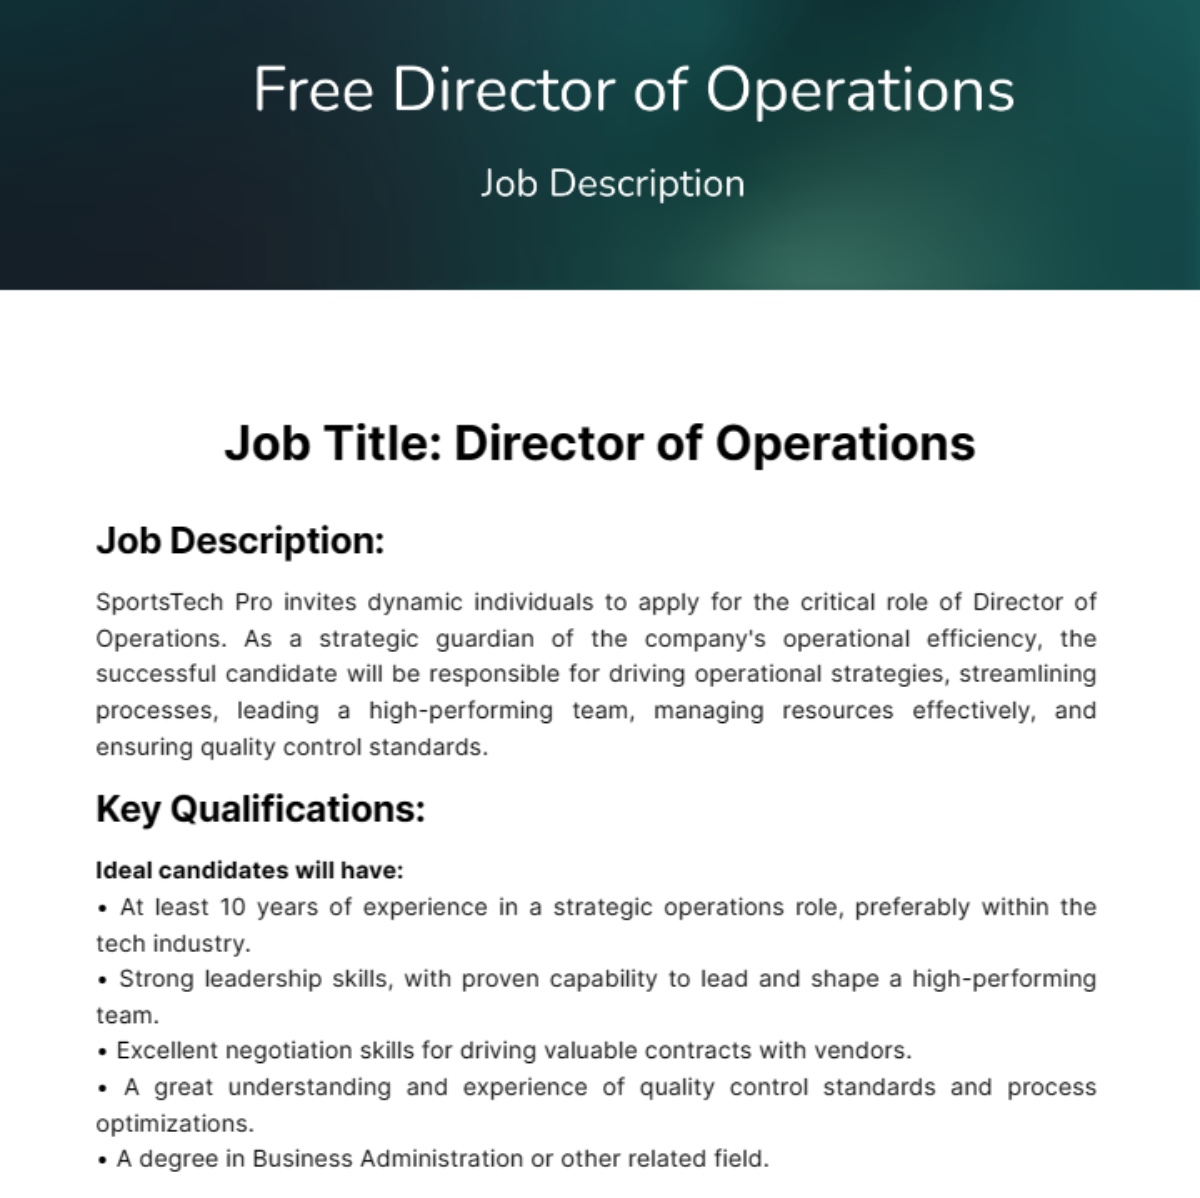 Director of Operations Job Description Template